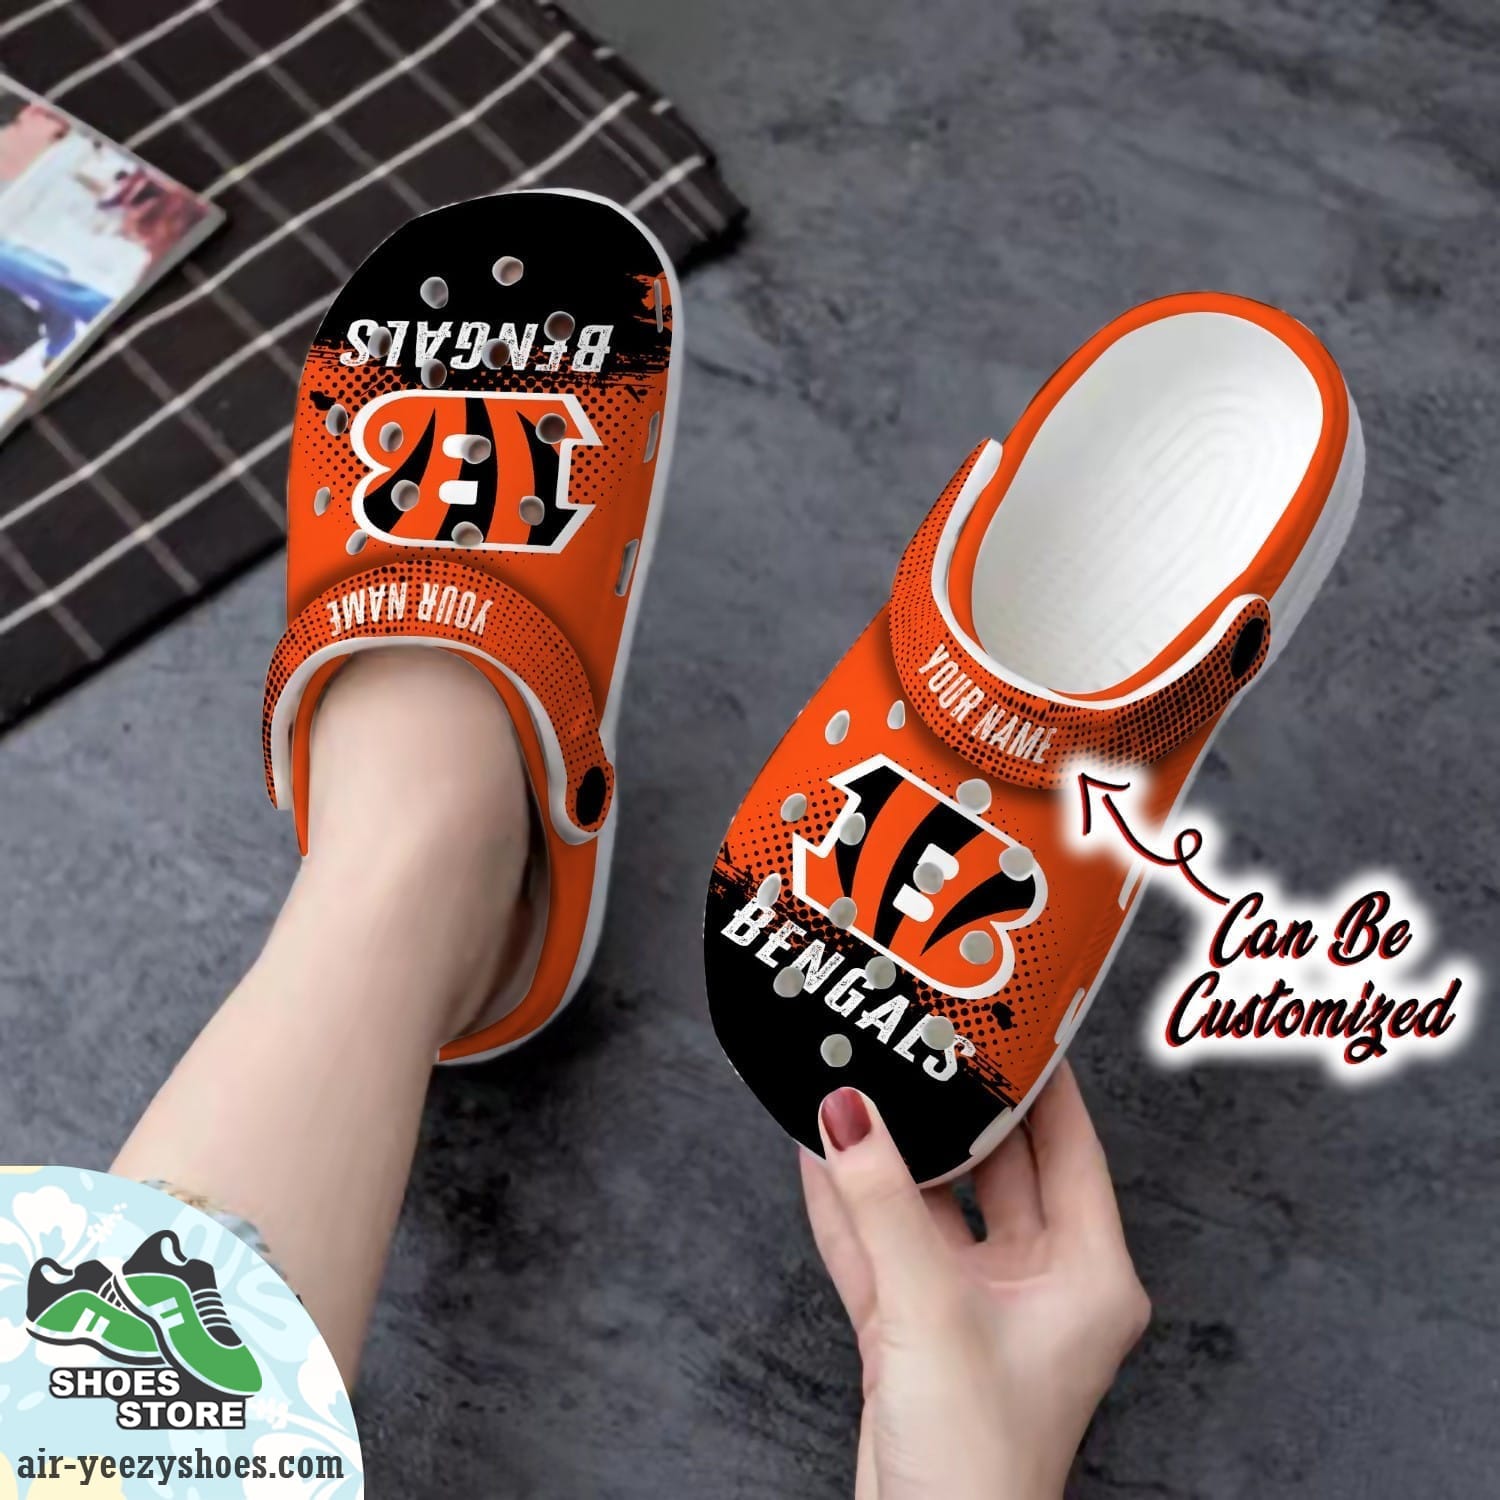 Personalized Cincinnati Bengals Half Tone Drip Flannel Clog Shoes, Football Crocs